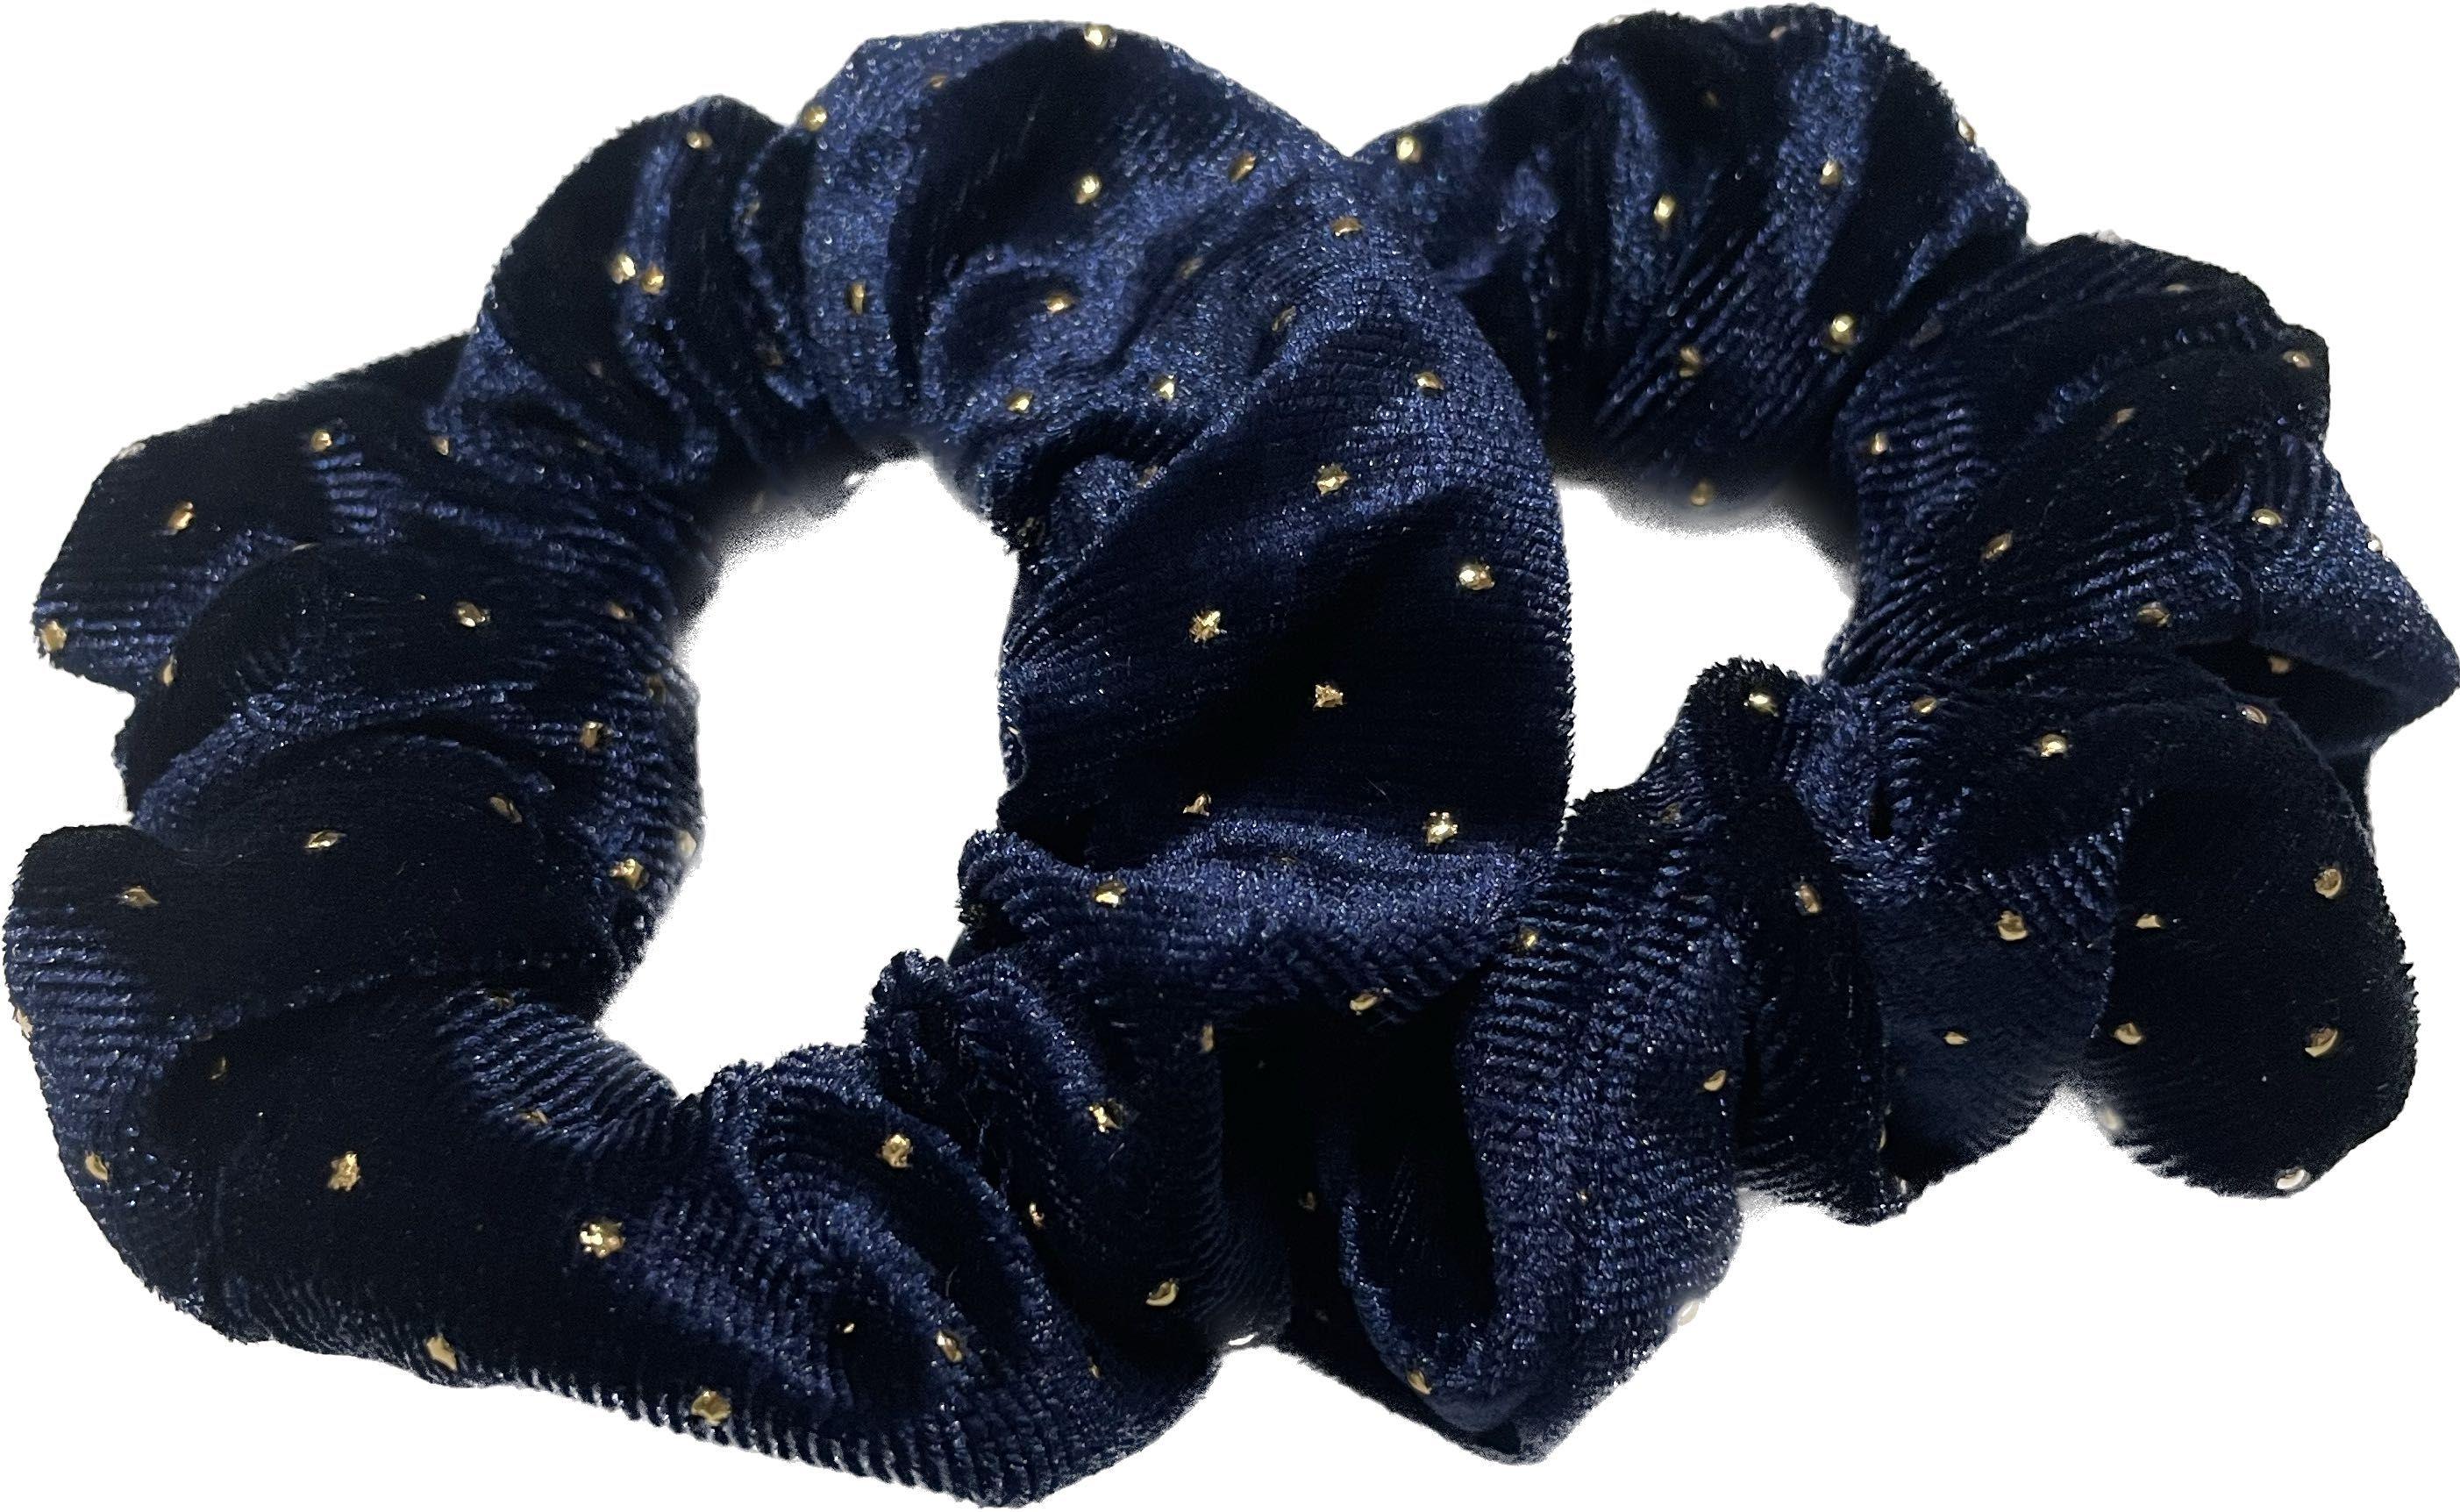 Velor hair scrunchie BLING 2 pcs. - with golden rhinestones, navy blue